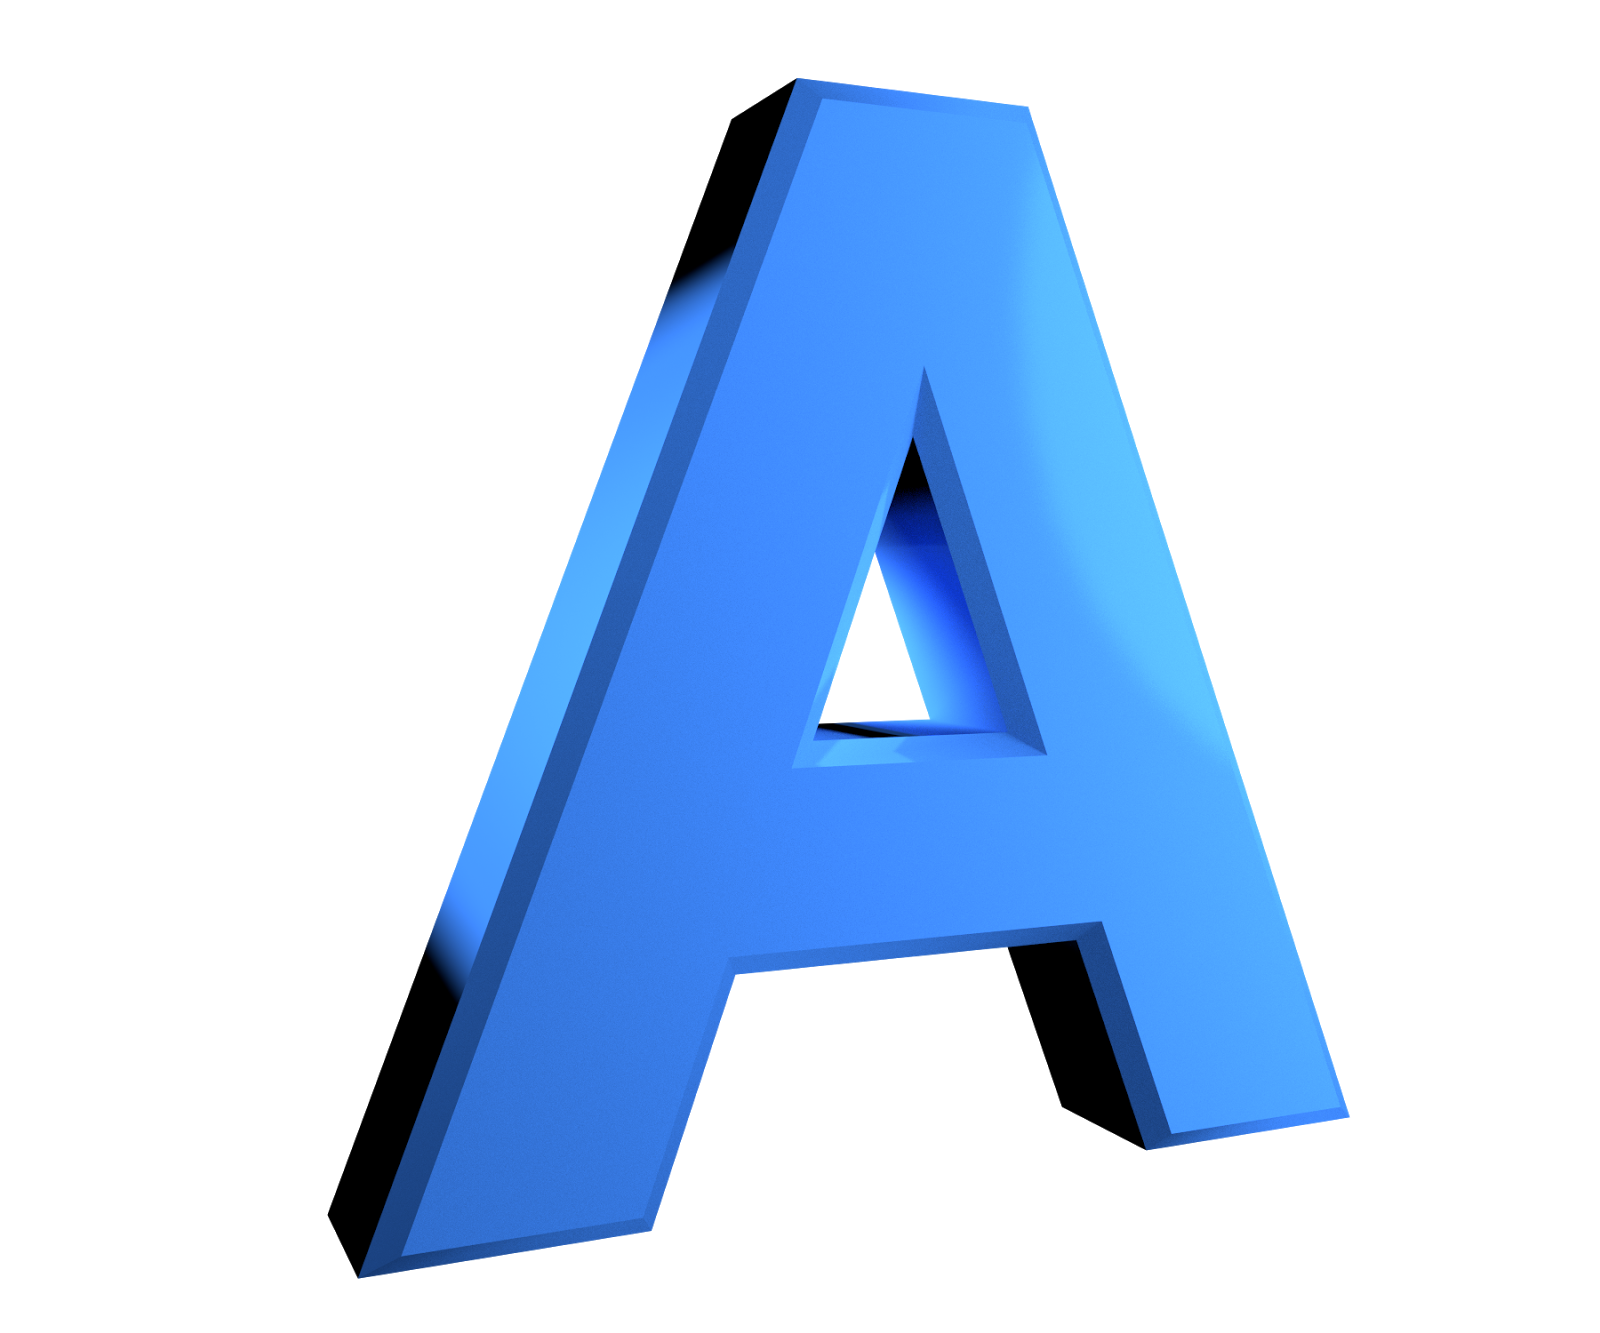 3D Alphabet Letters Png - Letter A, Transparent background PNG HD thumbnail